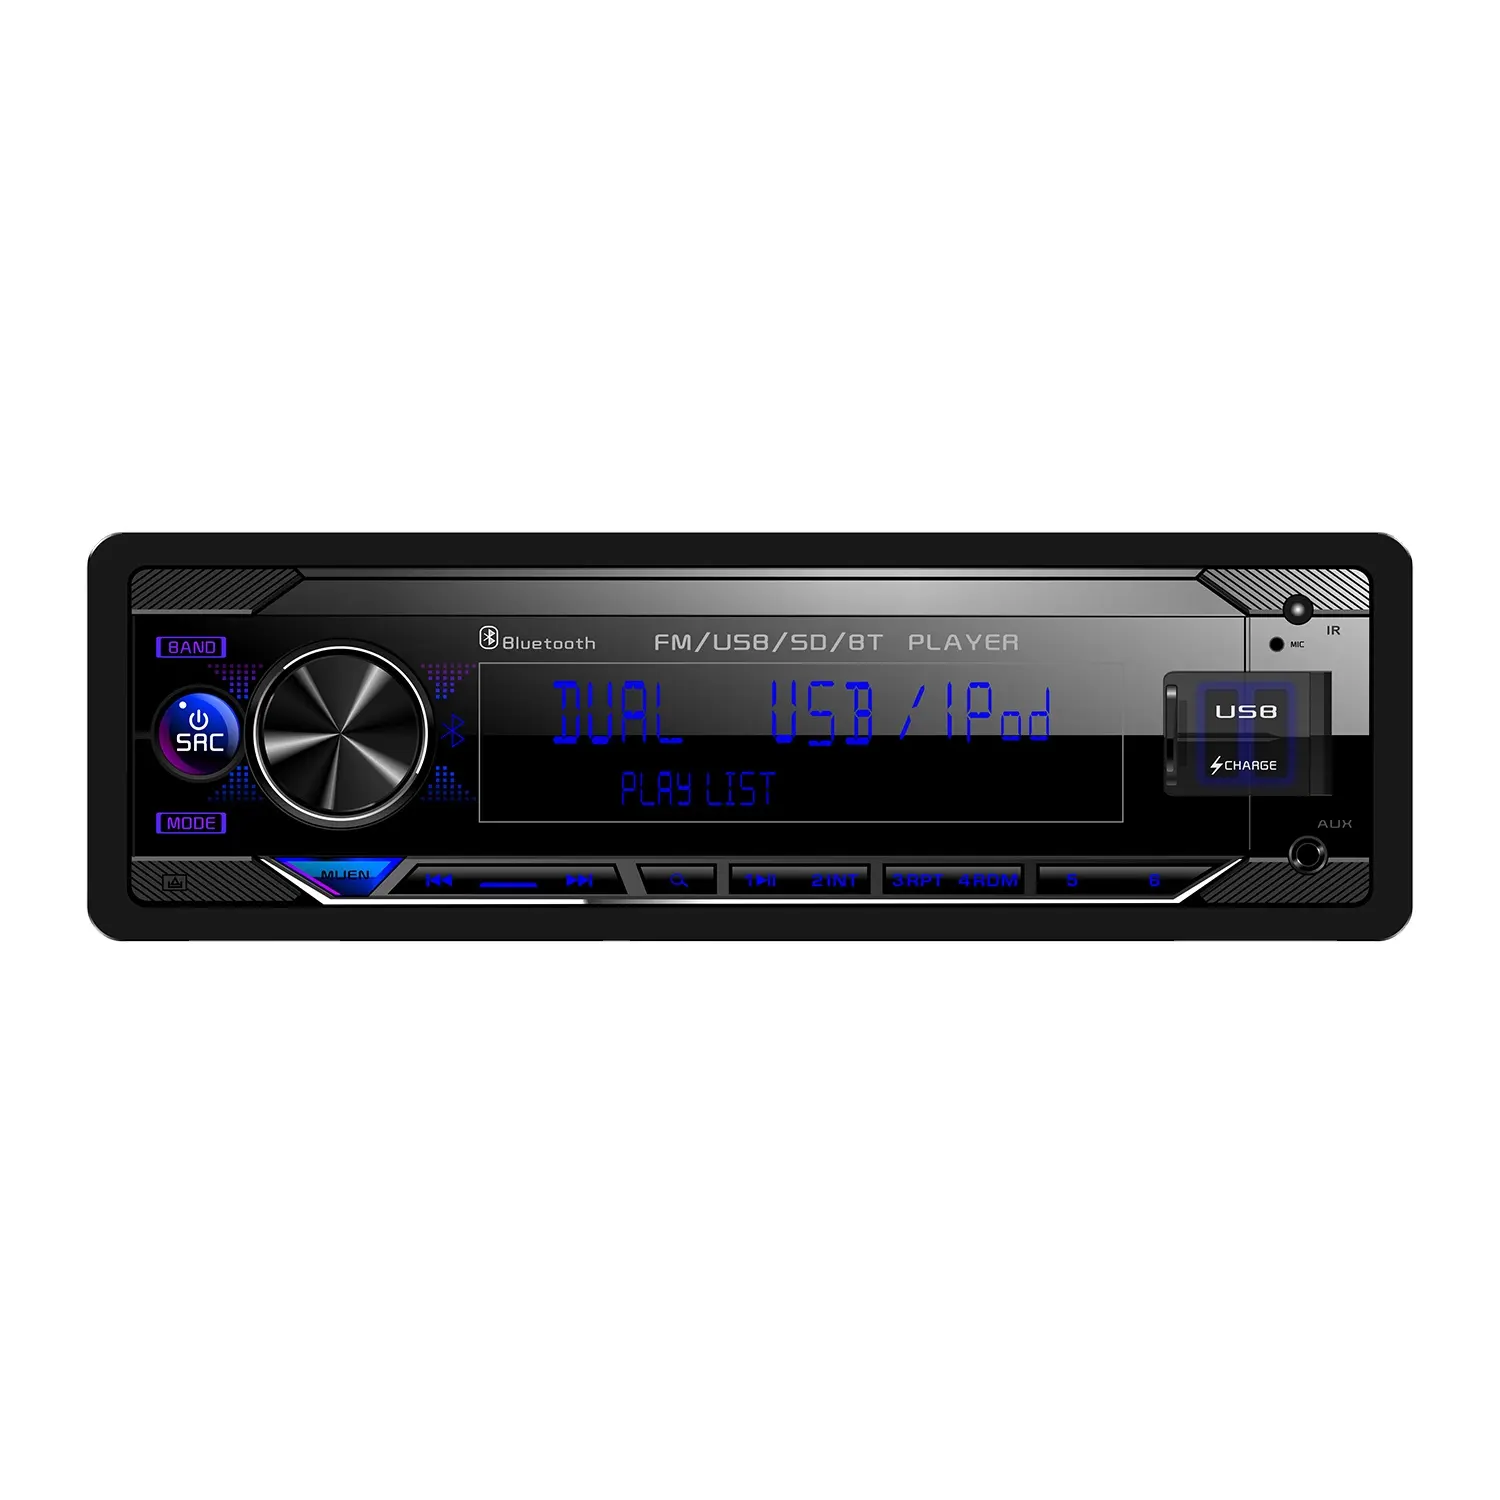 Neues Auto LCD tragbare analoge TV Auto DVD-Player Batch Großhandel hochwertige Flach bildschirm